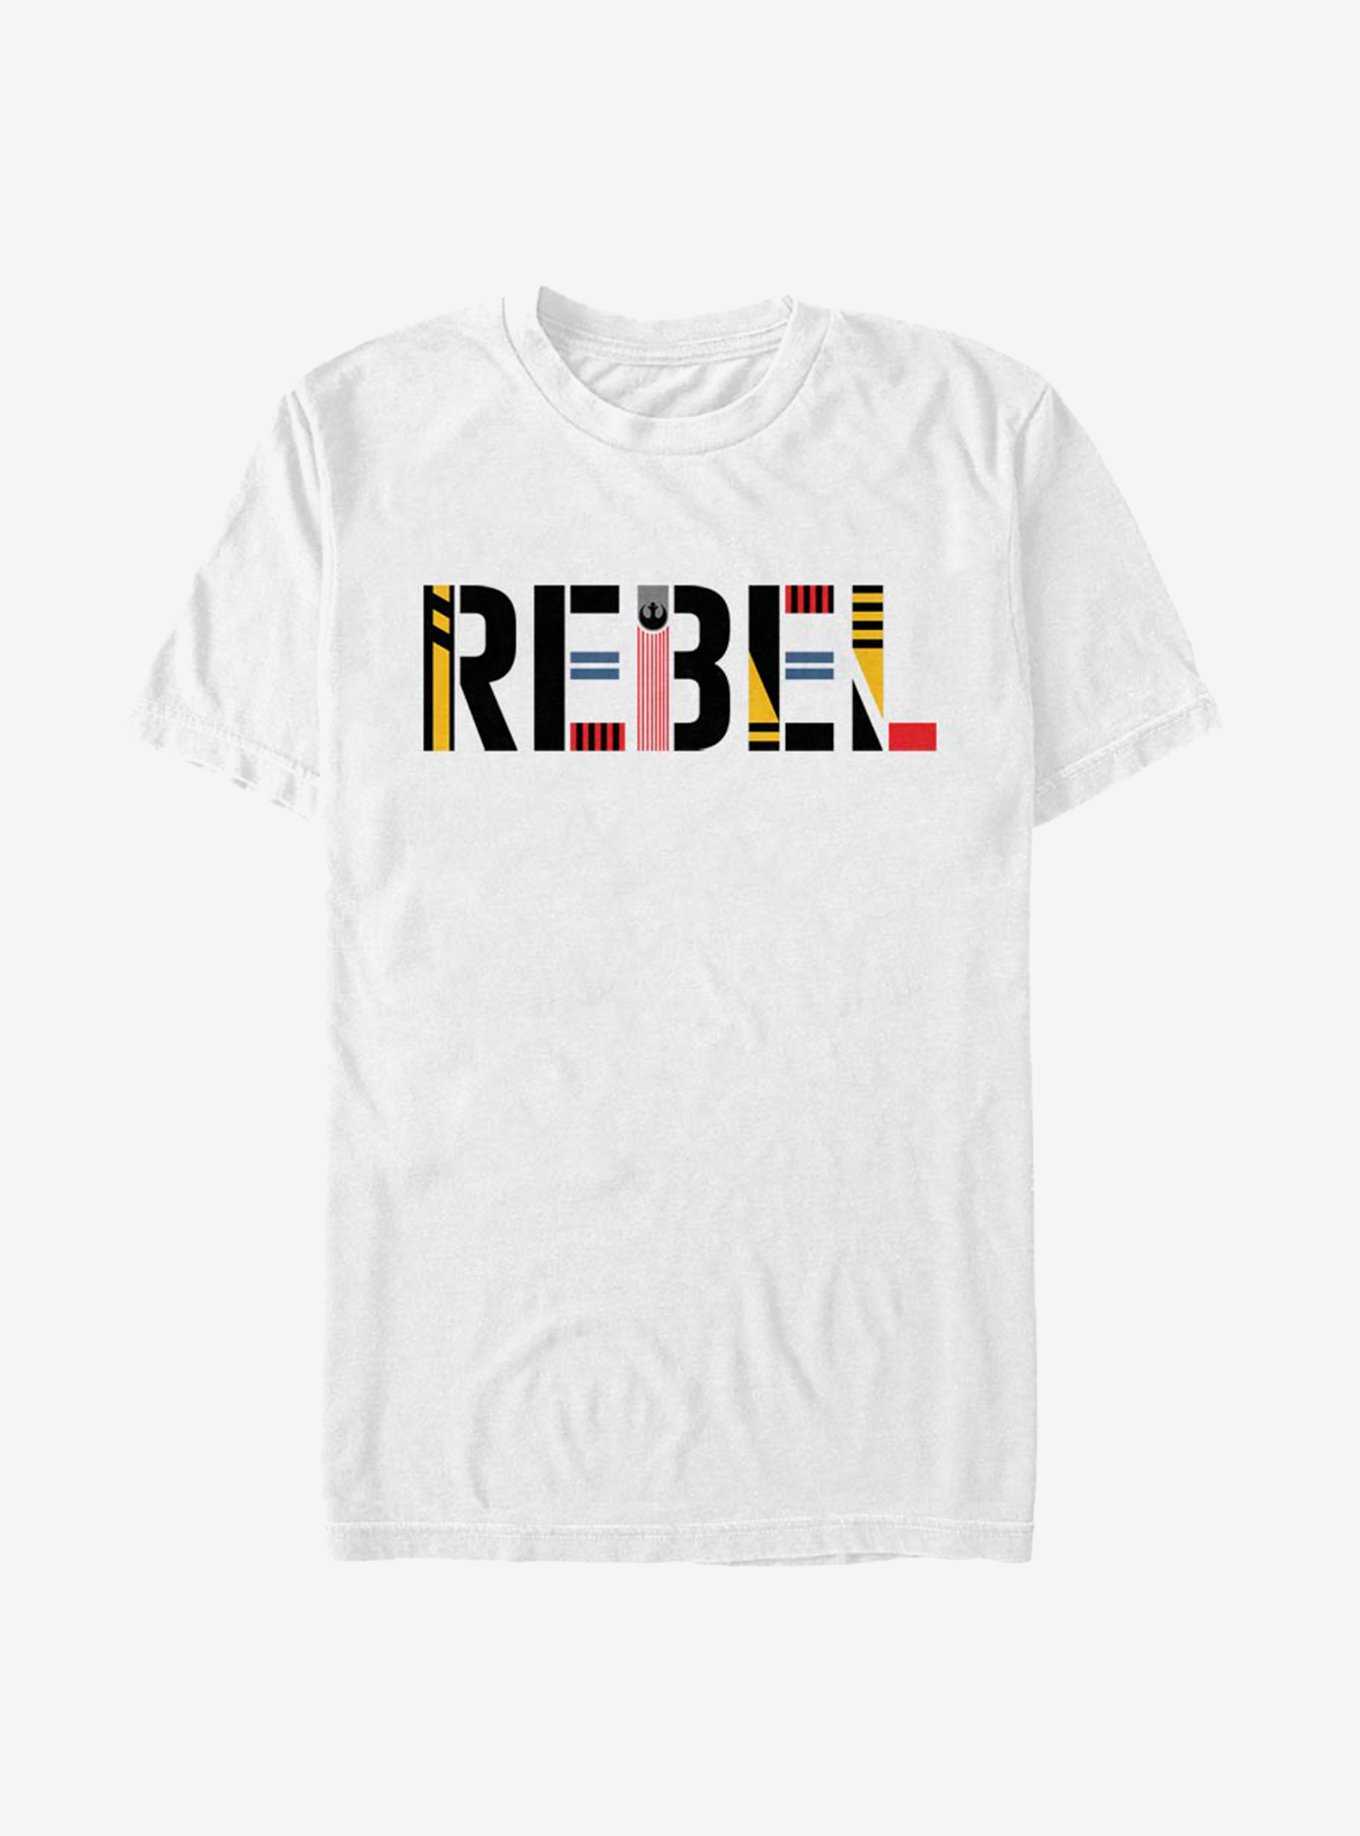 Star Wars Episode IX The Rise Of Skywalker Rebel Simple T-Shirt, , hi-res